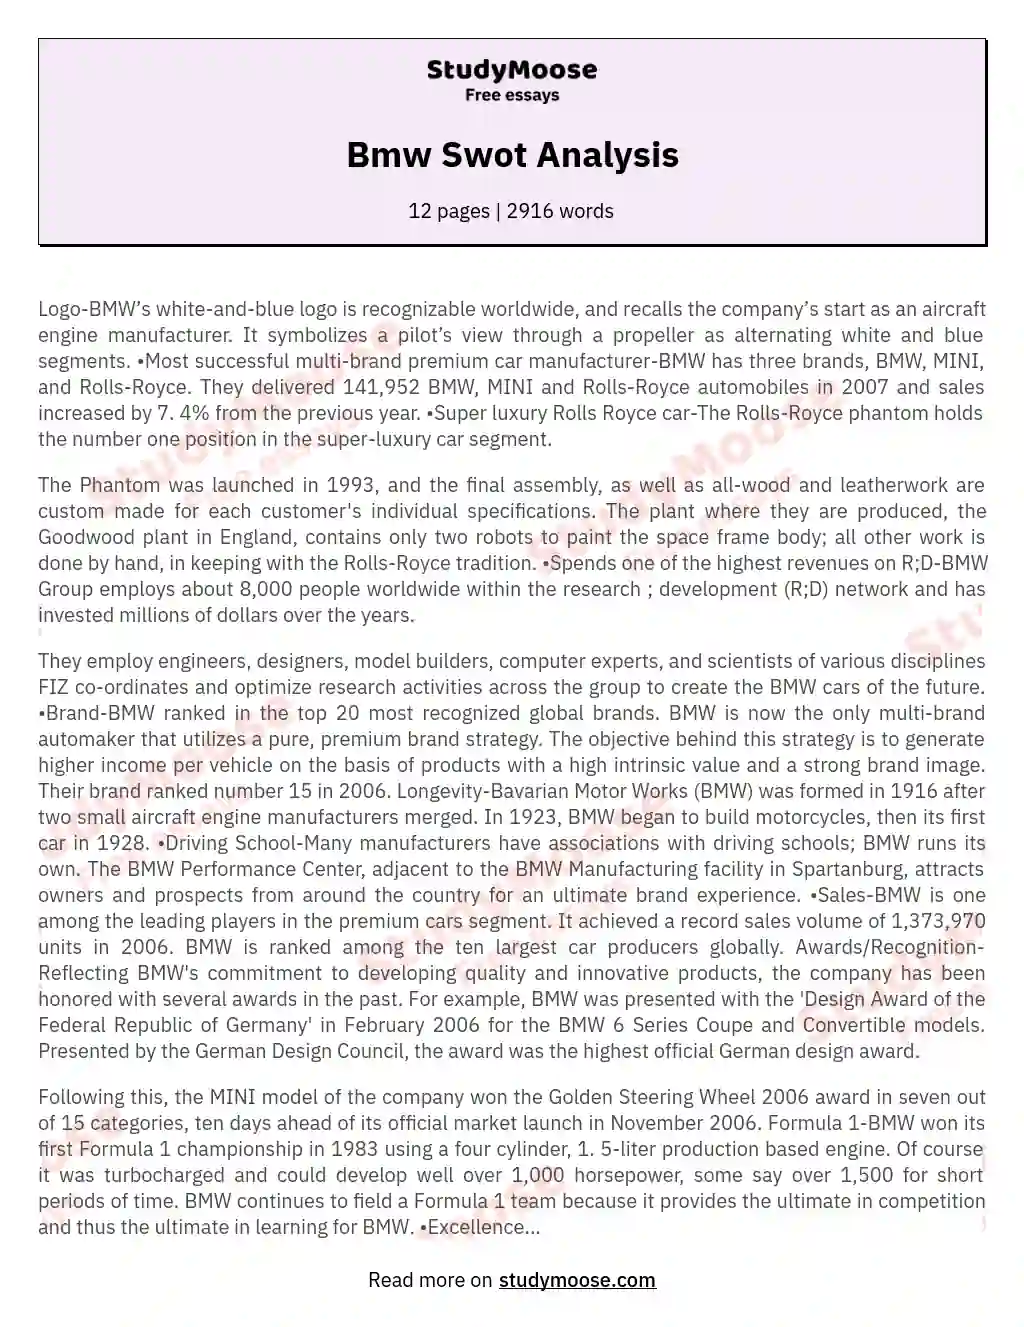 Bmw Swot Analysis essay